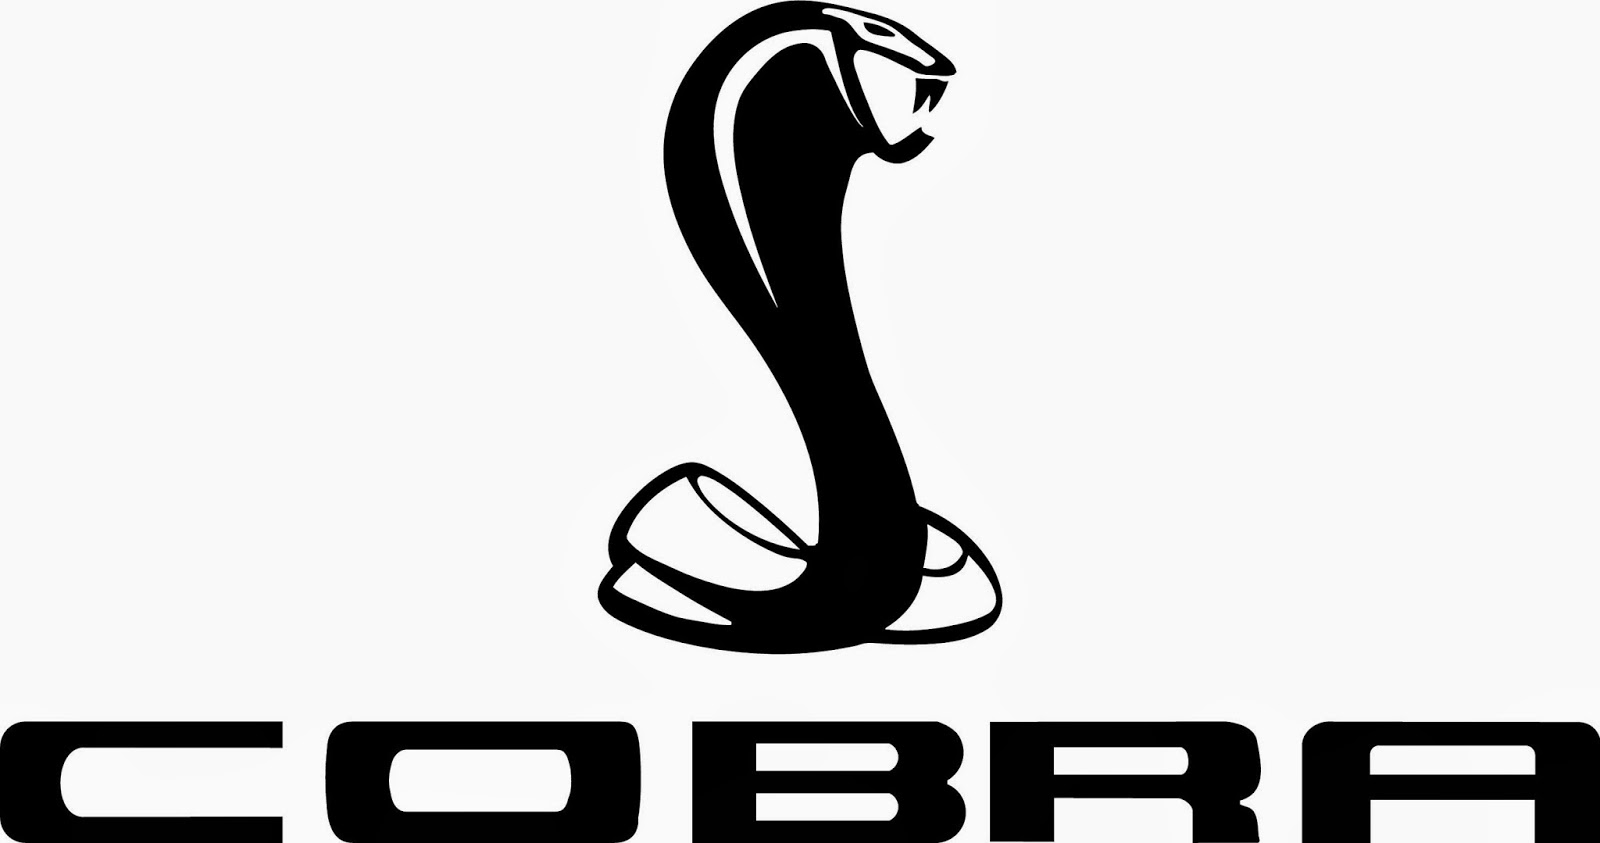 Ford cobra logo eps #9